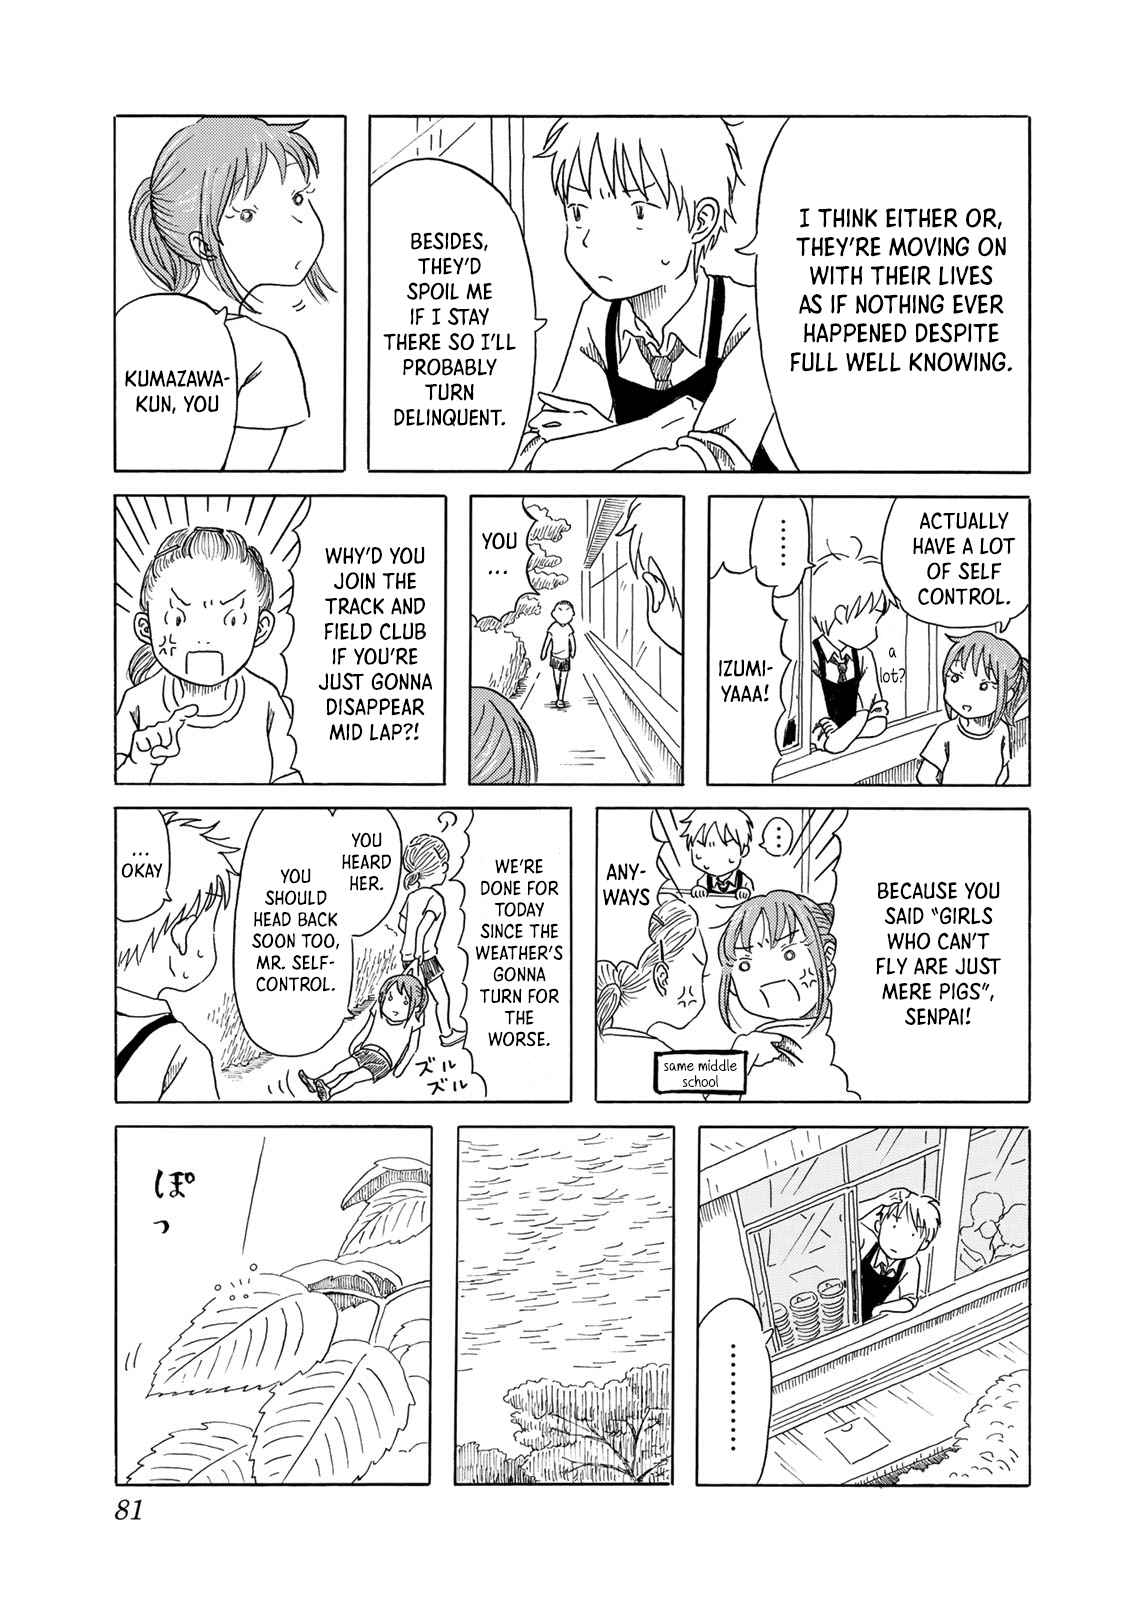 Mizu wa Umi ni Mukatte Nagareru Vol. 1 Ch. 4 Drip Drip, Splish Splash, No Plan Plan